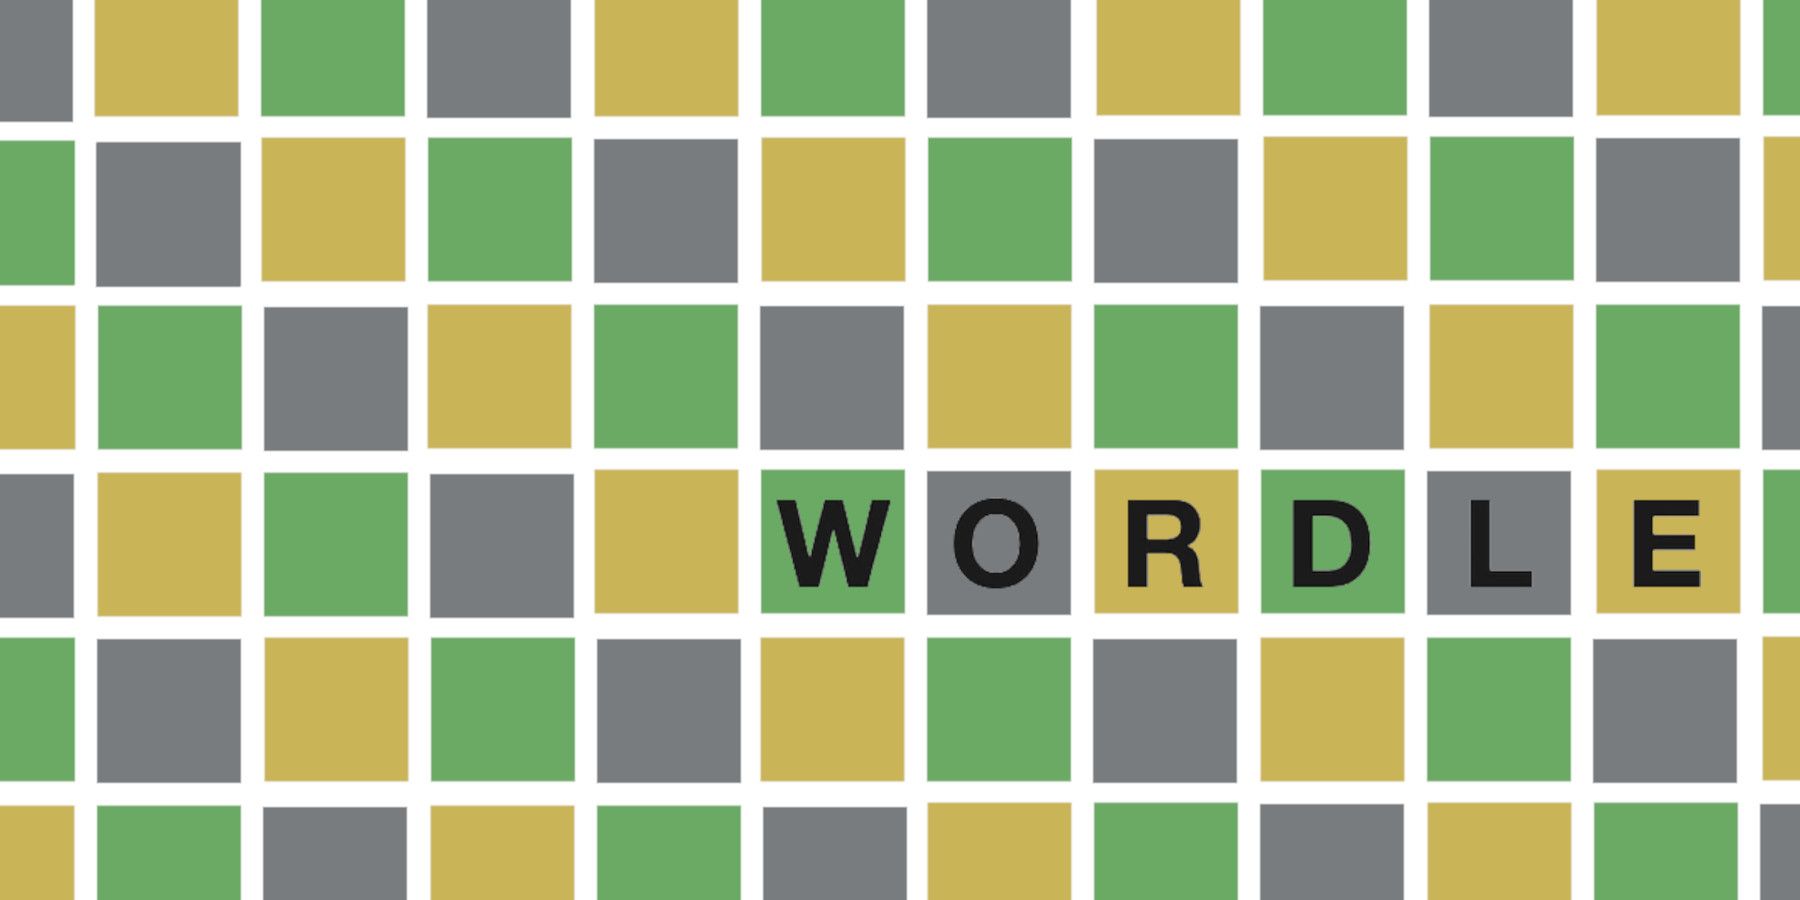 Wordle 279 إجابة في 25 مارس 2022